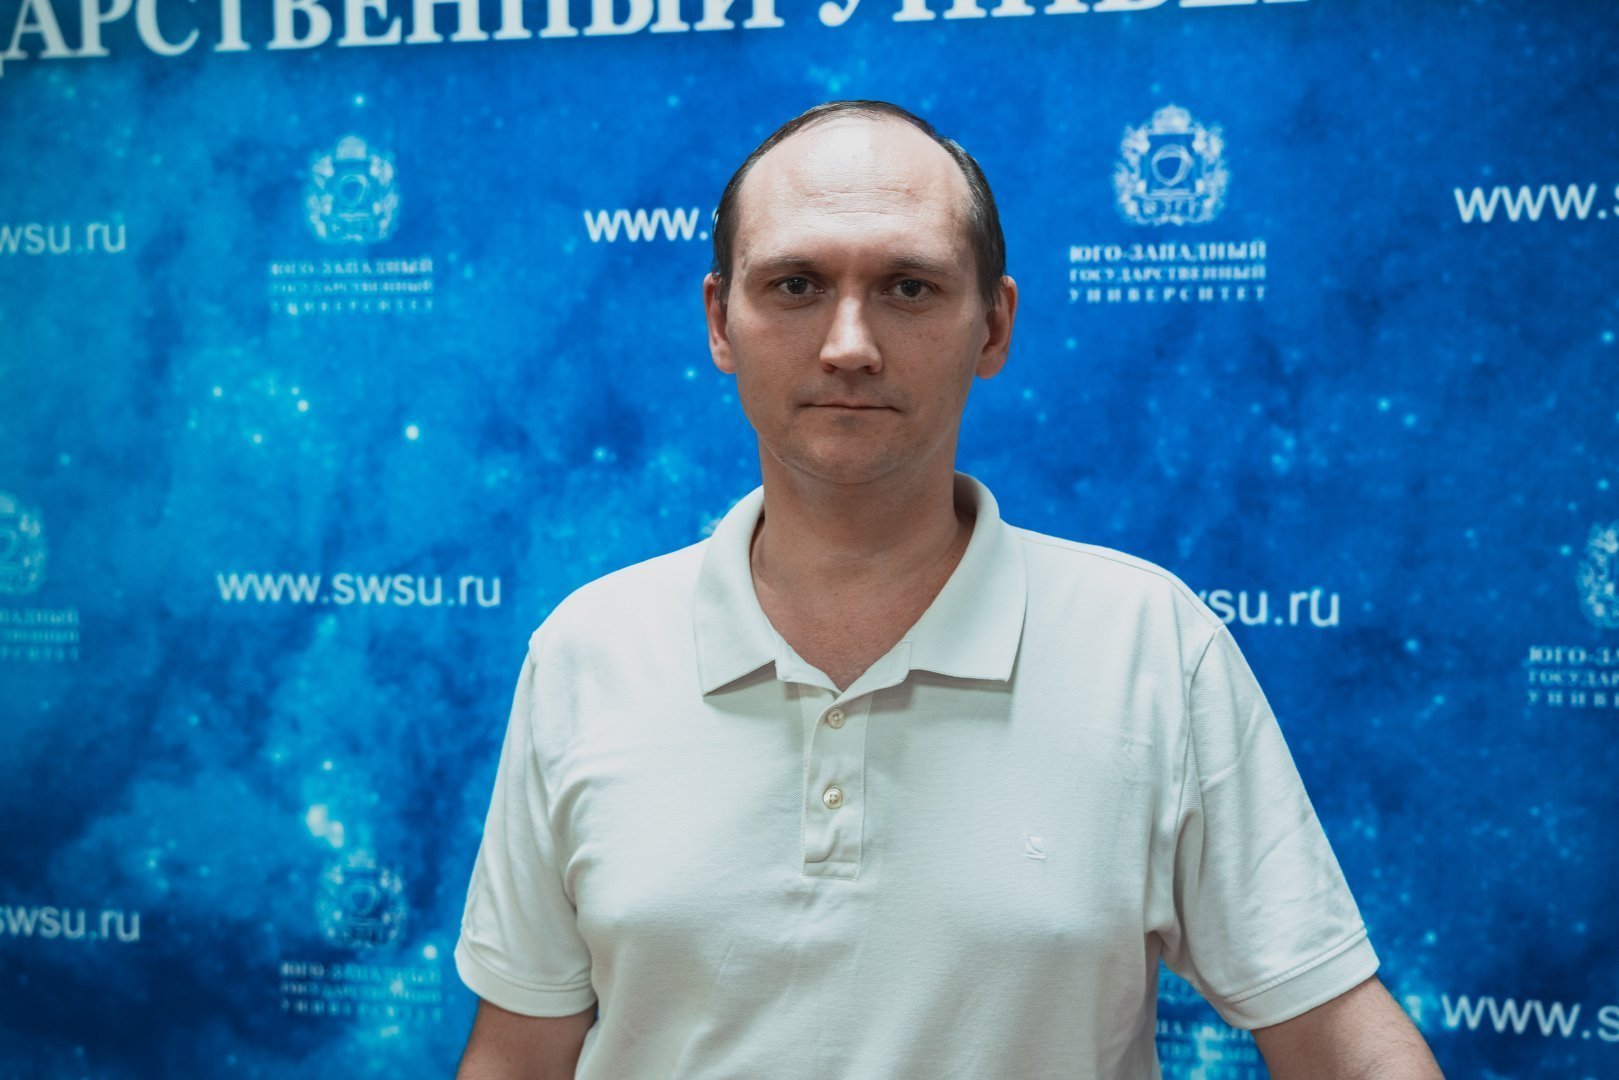  Поздравляем с Днем рождения Максима Александровича Пугачевского